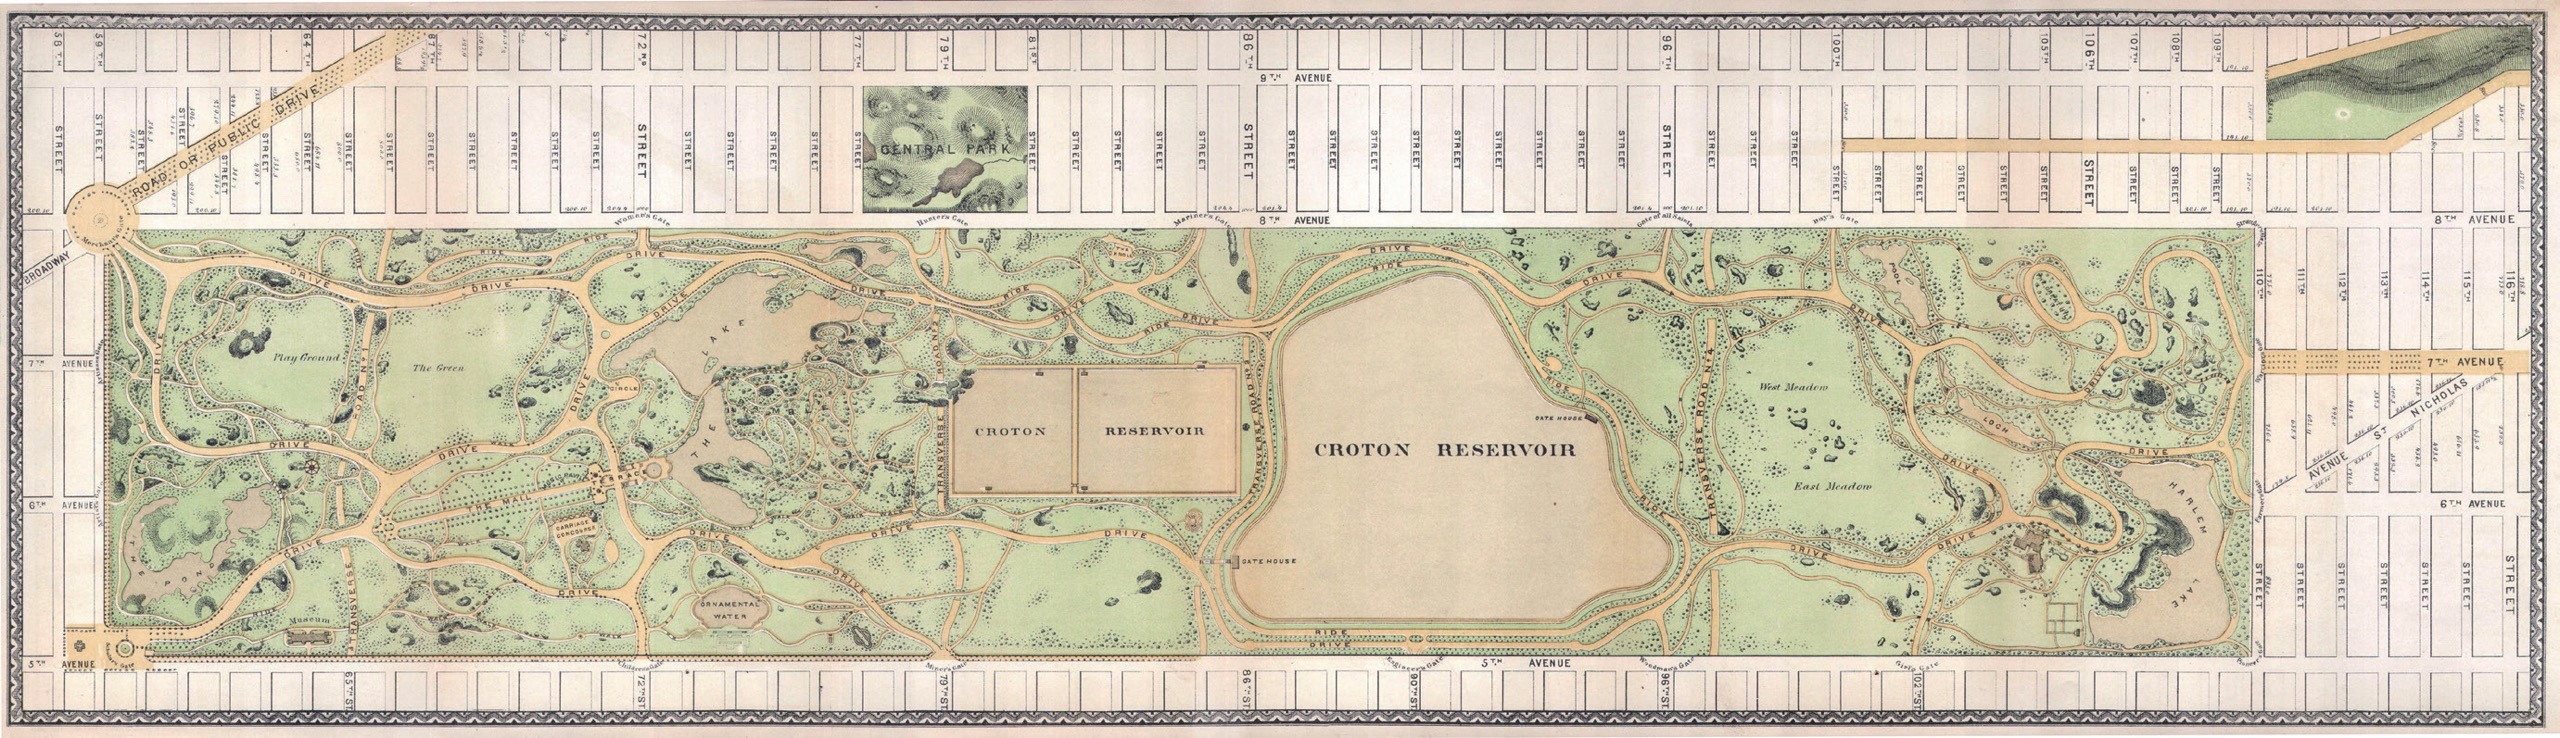 Fig. 8. Central Park (1869)